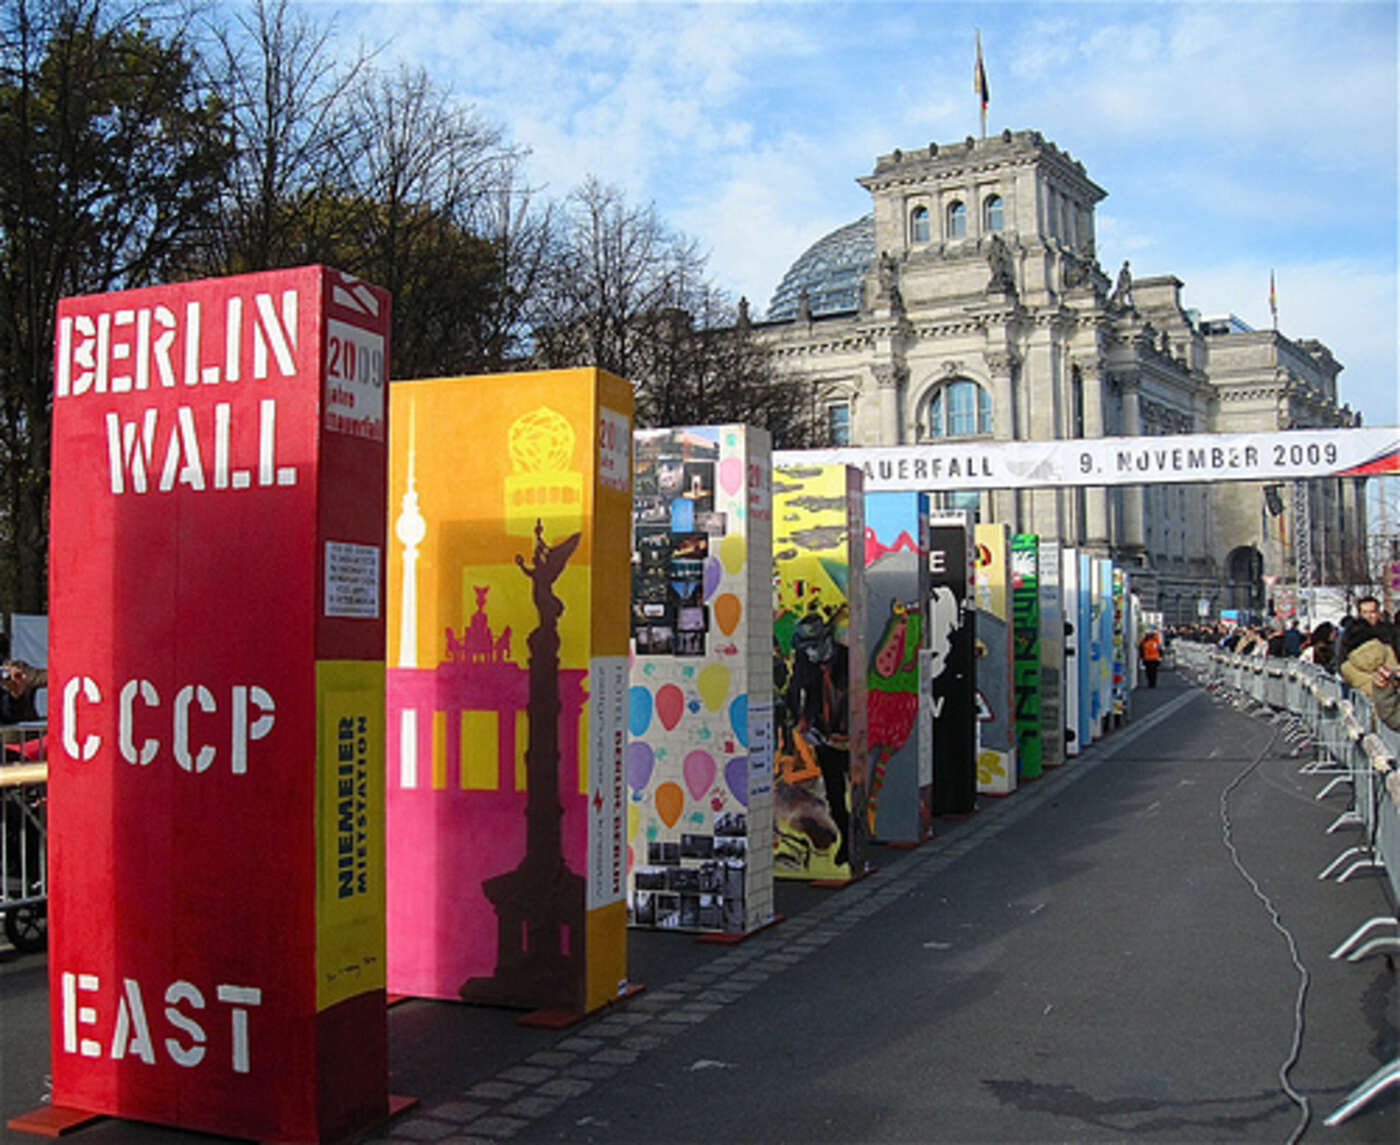 Die Dominosteine, die am 9. November in Berlin fielen, waren von über 15 000 Jugendlichen (!) im Vorfeld liebevoll bemalt worden © Marcfoto, flickr.com - Creative Commons Attribution ShareAlike 3.0 (http://creativecommons.org/licenses/by-sa/3.0/)